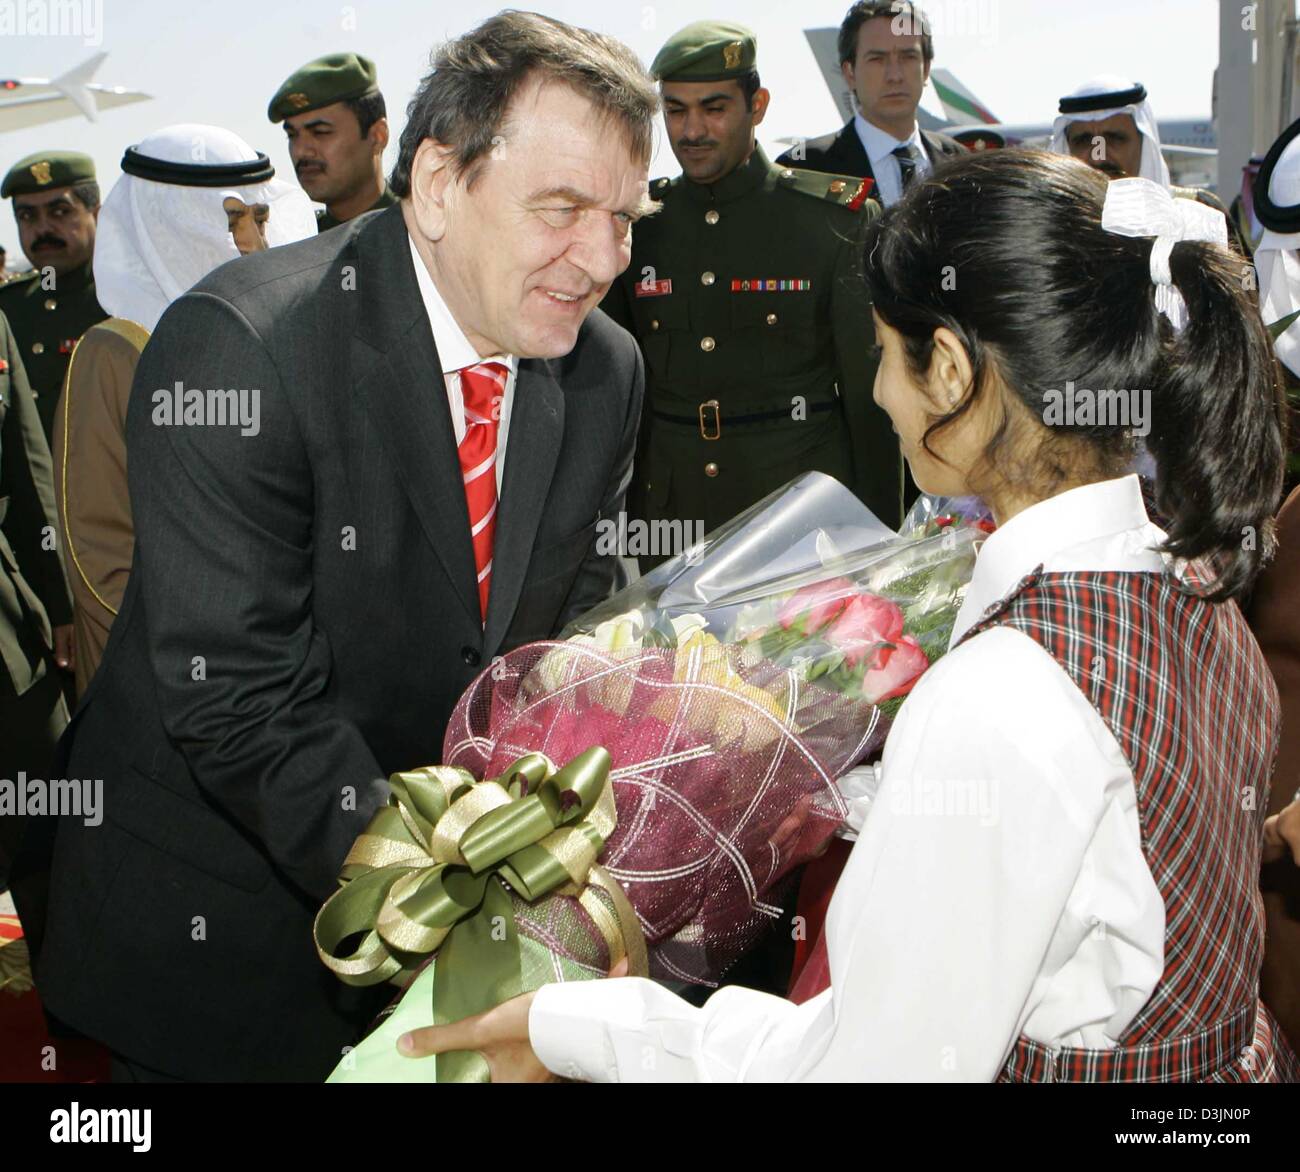 (Afp) - Le Chancelier allemand Schroeder est accueilli par une jeune fille avec des fleurs à l'aéroport de Manama, Bahreïn, le 2 mars 2005. Schroeder visite à Bahreïn est partie de sa tournée d'une semaine de sept pays arabes visant à stimuler l'Allemagne Les relations politiques et commerciales dans la région du Golfe. Banque D'Images